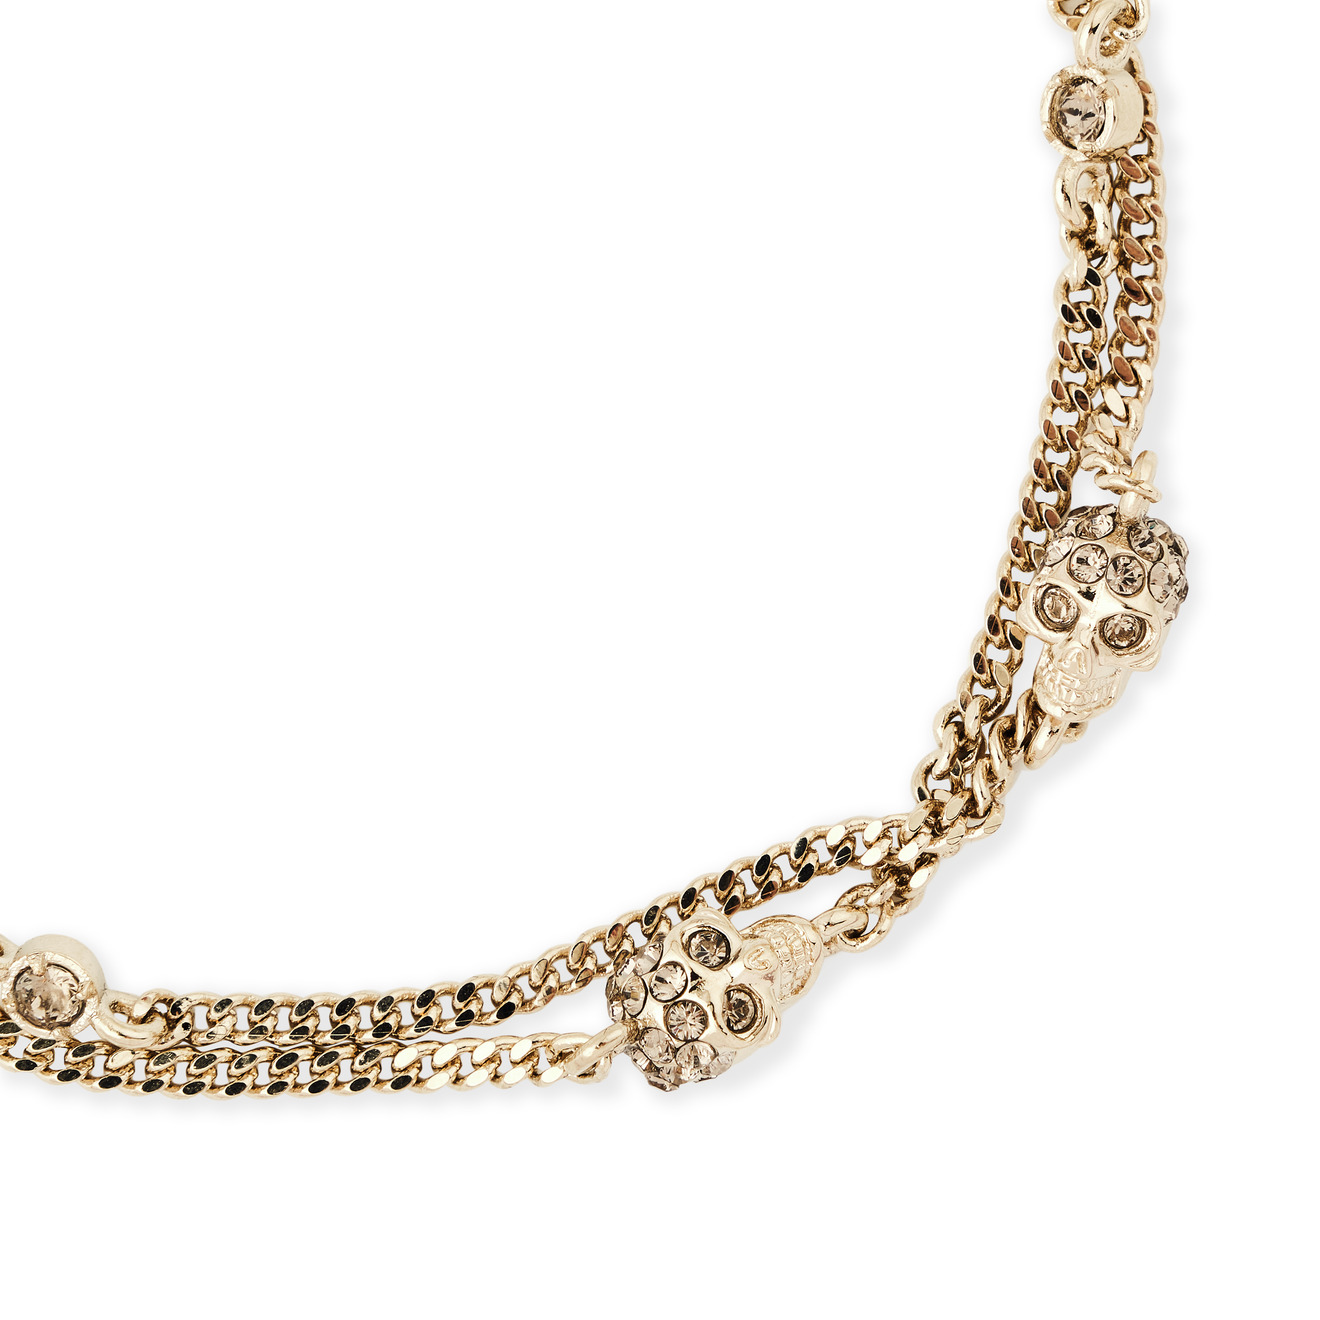 Alexander McQueen Серебристый браслет с кристаллами MULTI CHAIN BRACELET alexander mcqueen золотистый браслет с жемчужинами chain pearl bracelet